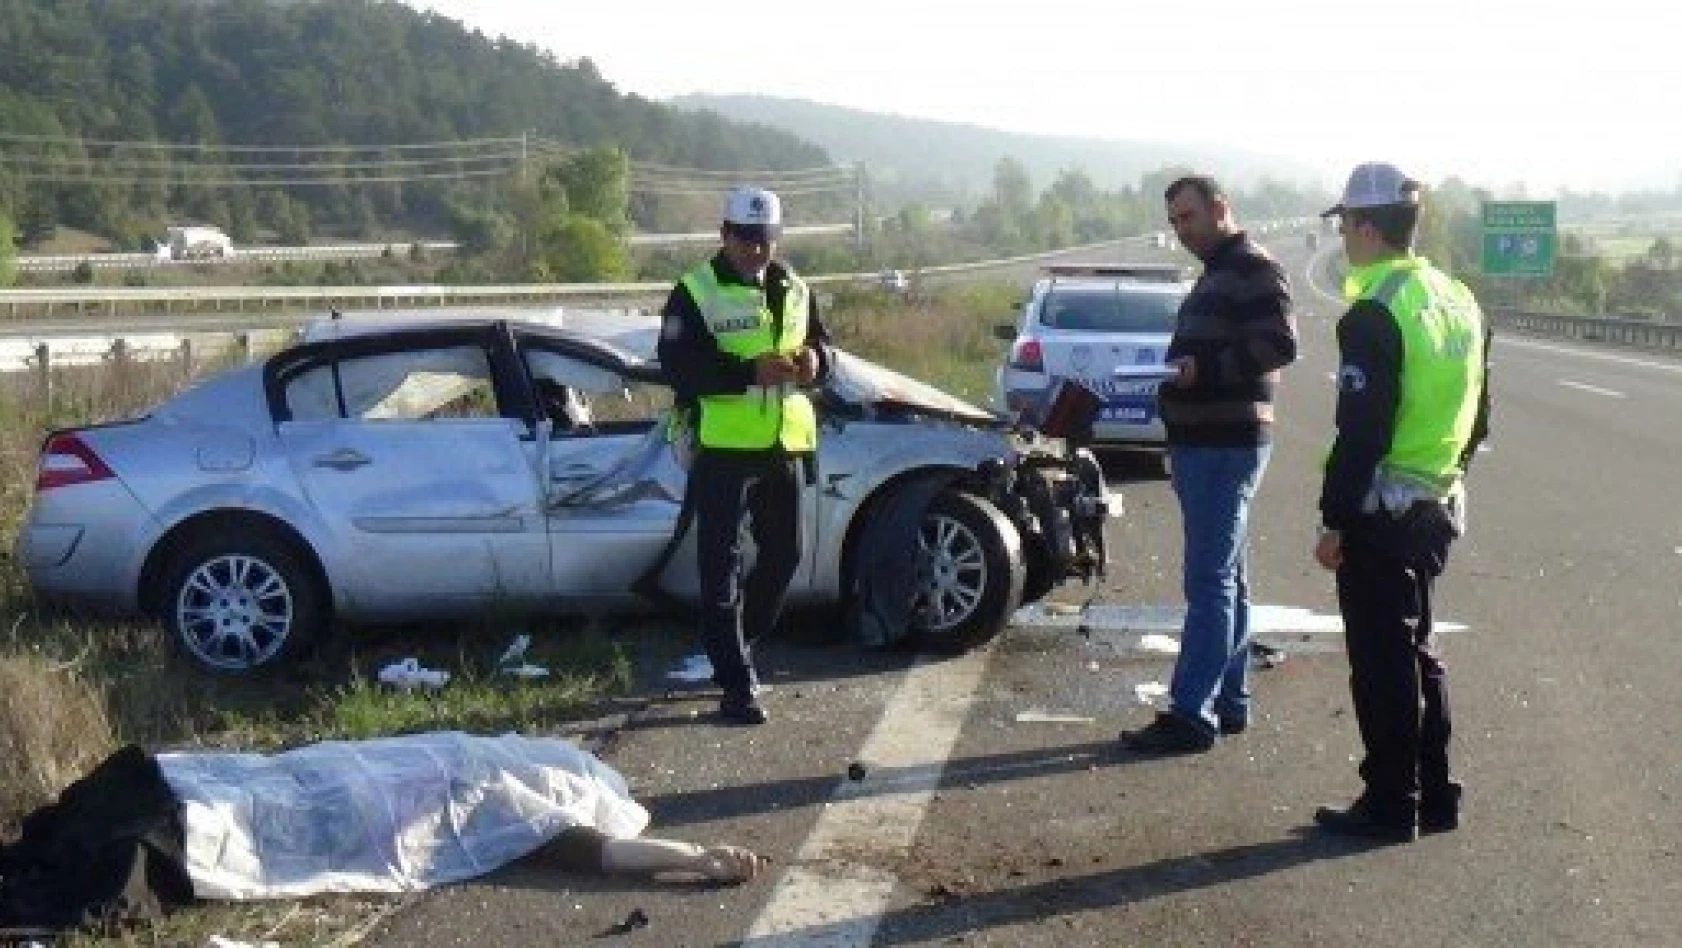 Kastamonu'ya Gelen Aile Kaza Yaptı: 2 Ölü, 2 Yaralı